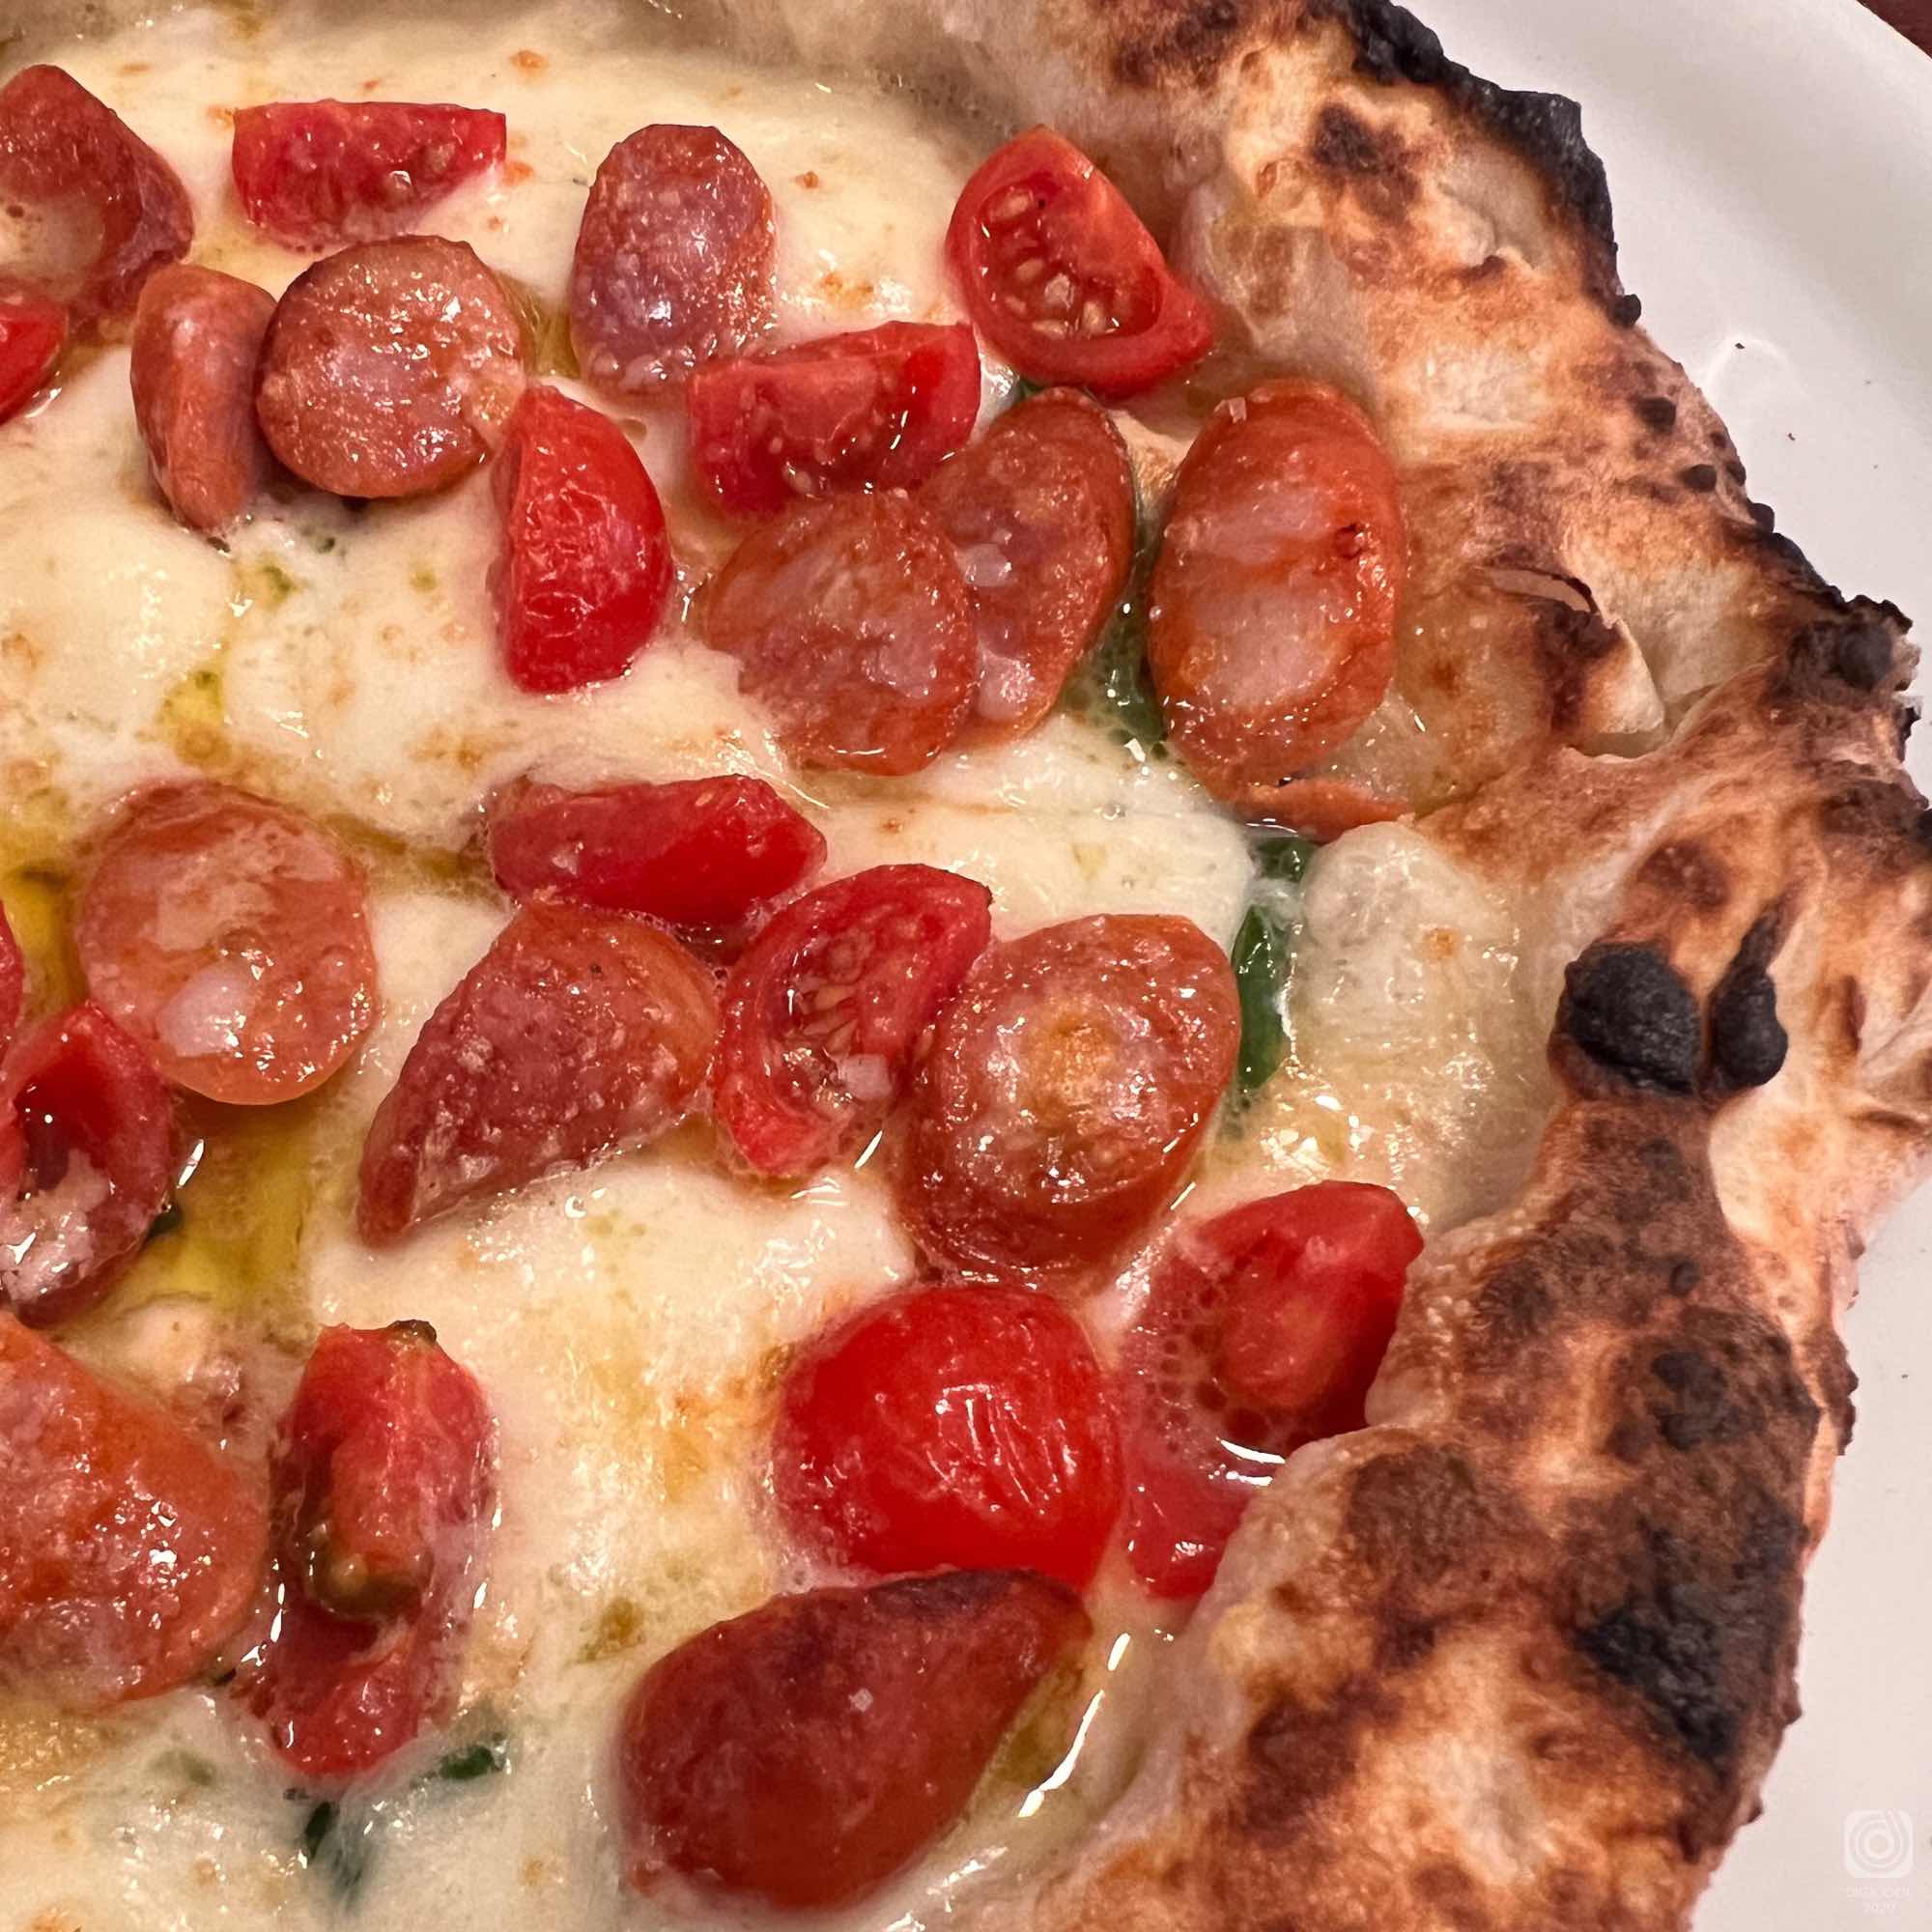 東京都 大田区・本格薪窯焼きピッツァが楽しめる「Pizzeria fabbrica 1090」でちょっとオシャレなランチを。